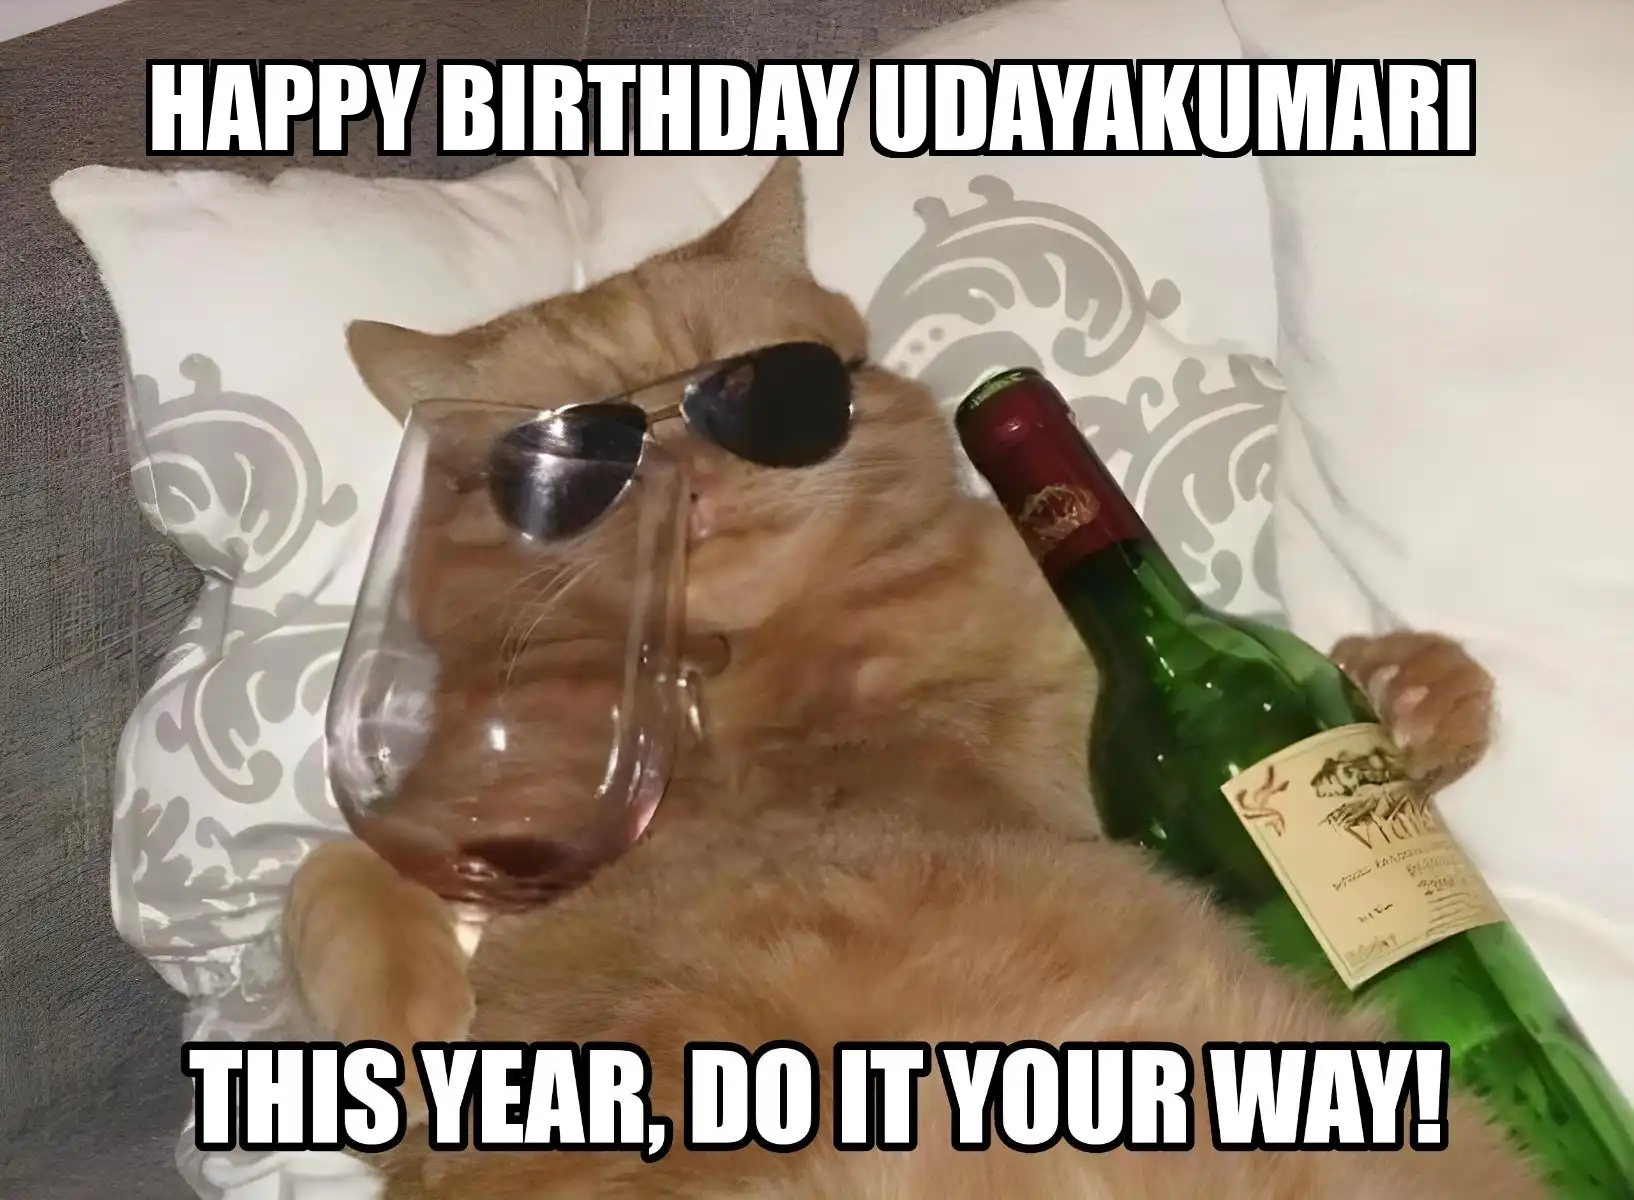 Happy Birthday Udayakumari This Year Do It Your Way Meme